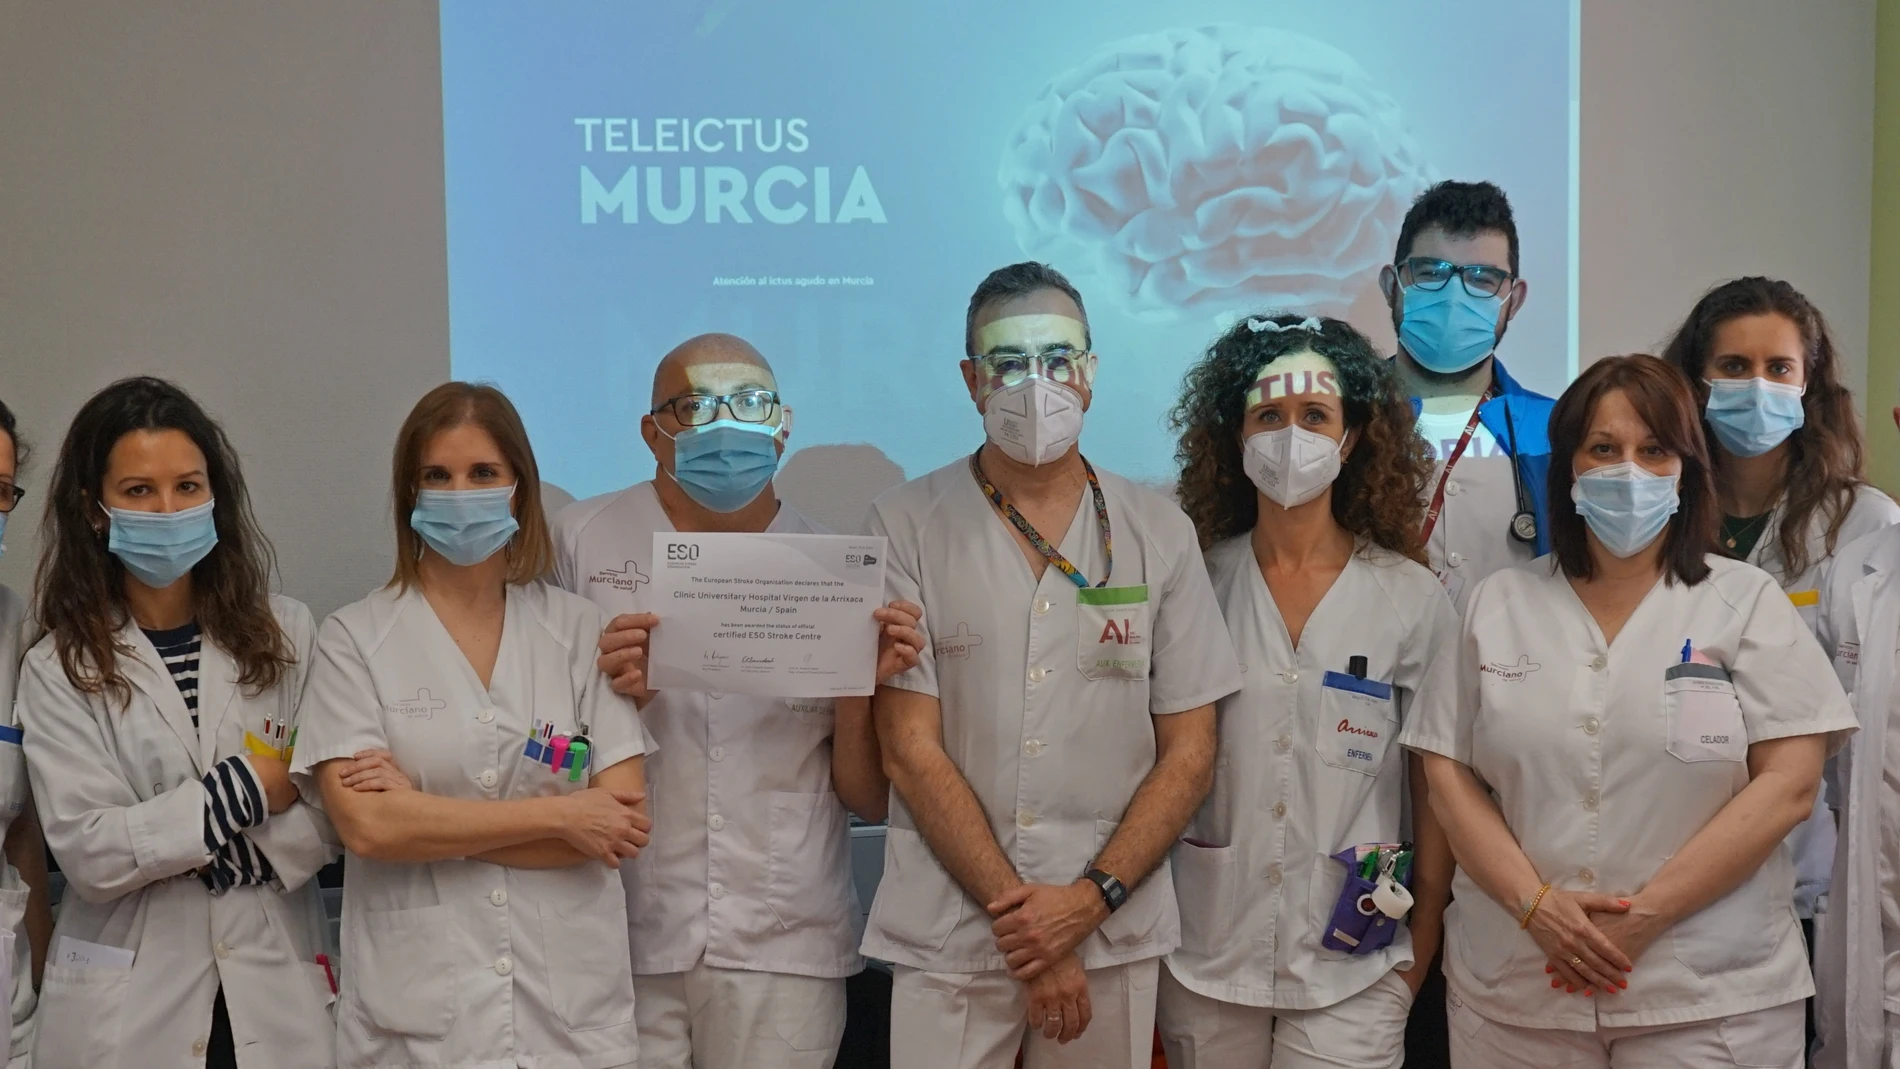 La responsable de la Unidad de Ictus del hospital clínico universitario Virgen de la Arrixaca, la doctora Ana Morales, a la derecha de la imagen, junto a miembros del equipo. CARM 25/03/2022